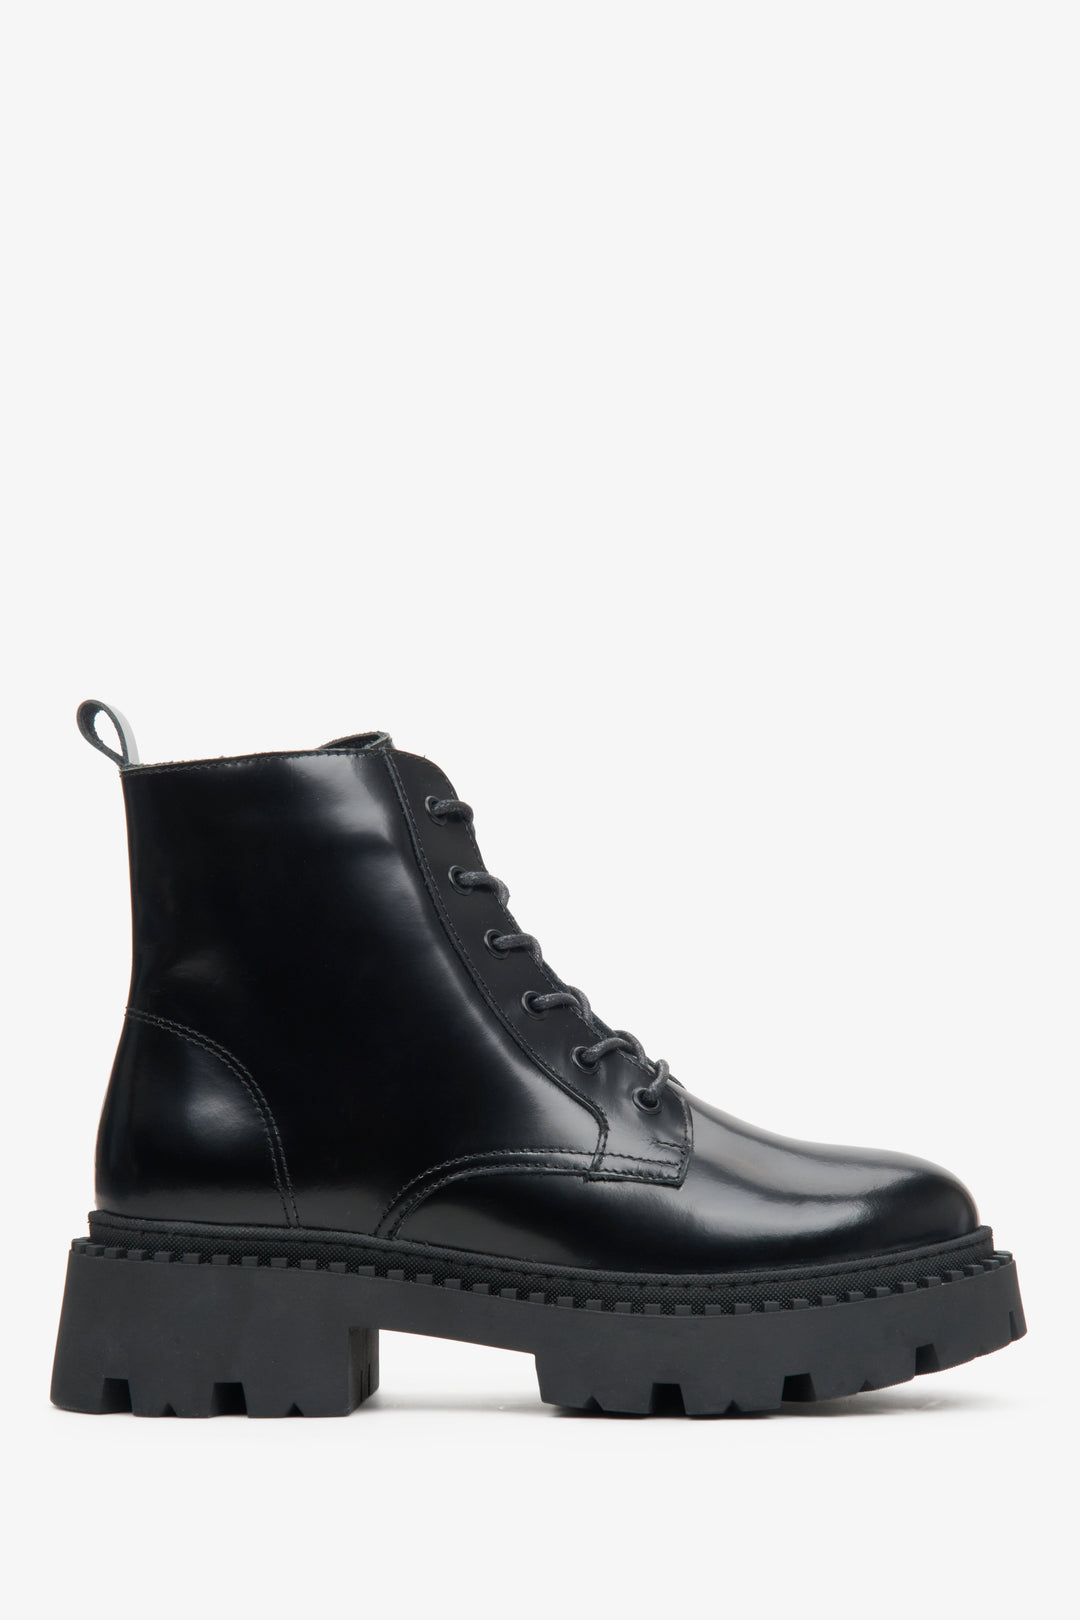 Niskie, sznurowane botki damskie w kolorze czarnym ze skóry naturalnej marki Estro - profil buta.